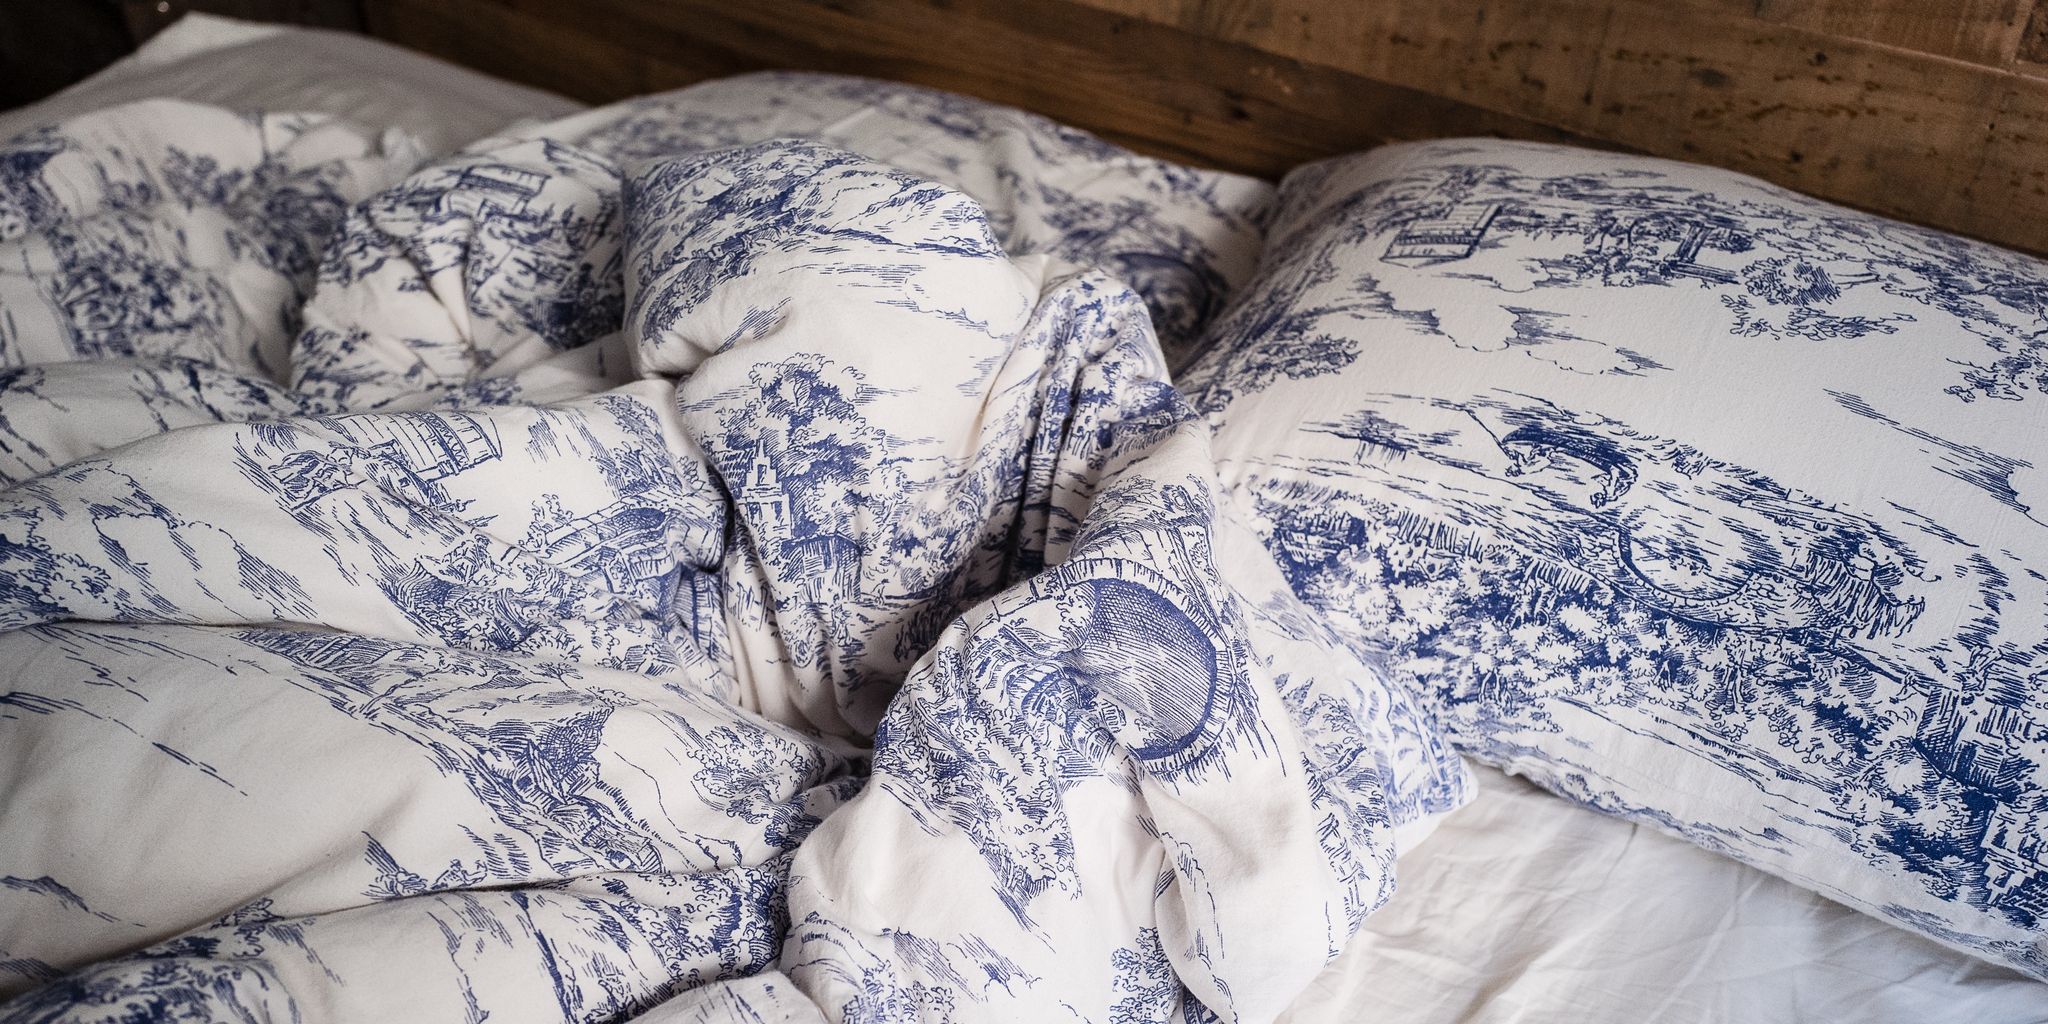 Blue, Textile, Bed sheet, Bedding, Linens, Pattern, Duvet cover, Room, Duvet, Slipcover, 